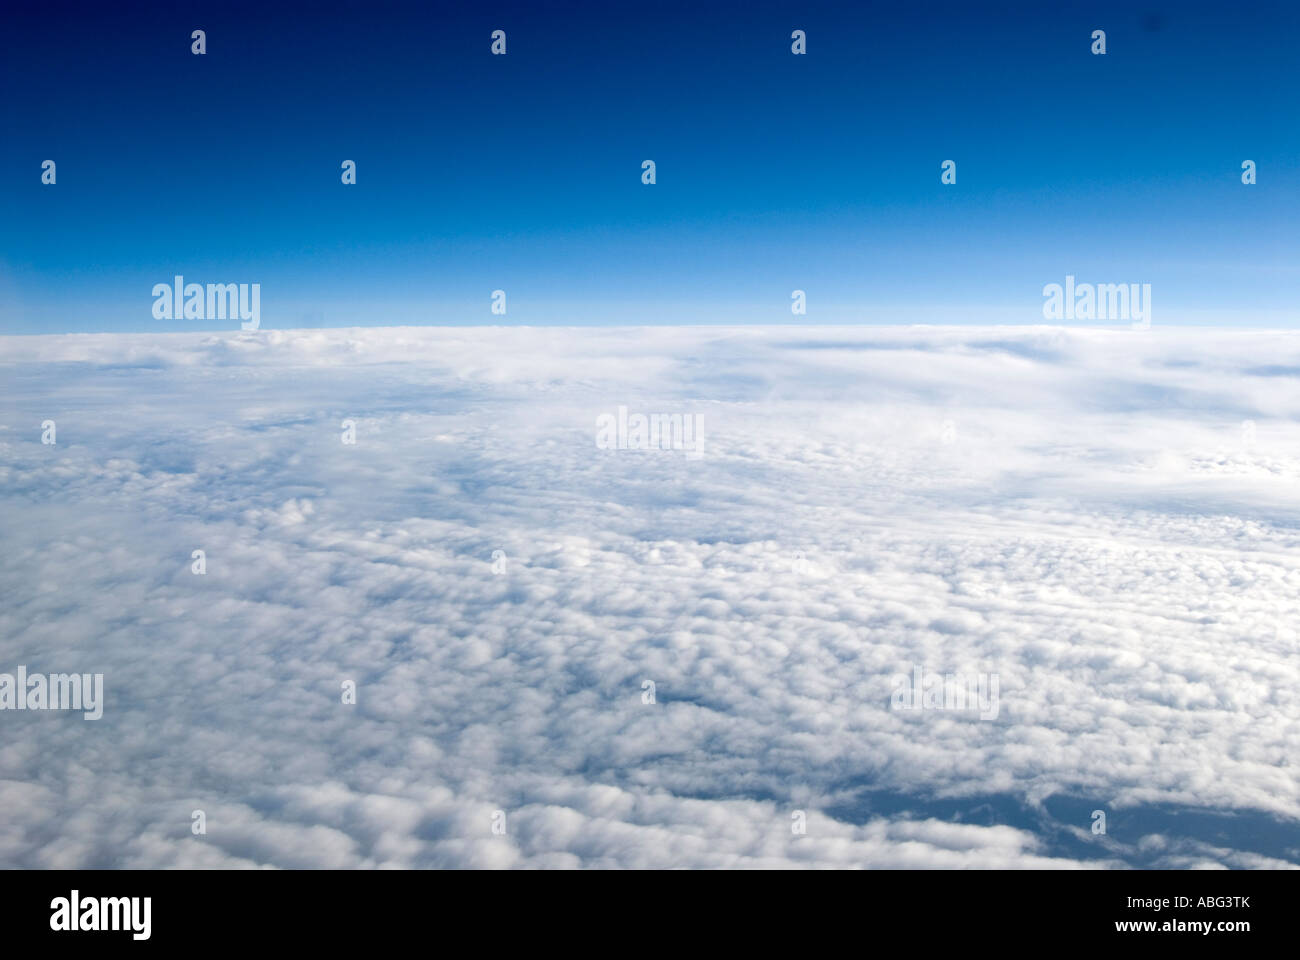 Vistas típicas verá cuando volaba por encima de las nubes en un avión quizás en vacaciones o ir en un viaje de negocios Foto de stock